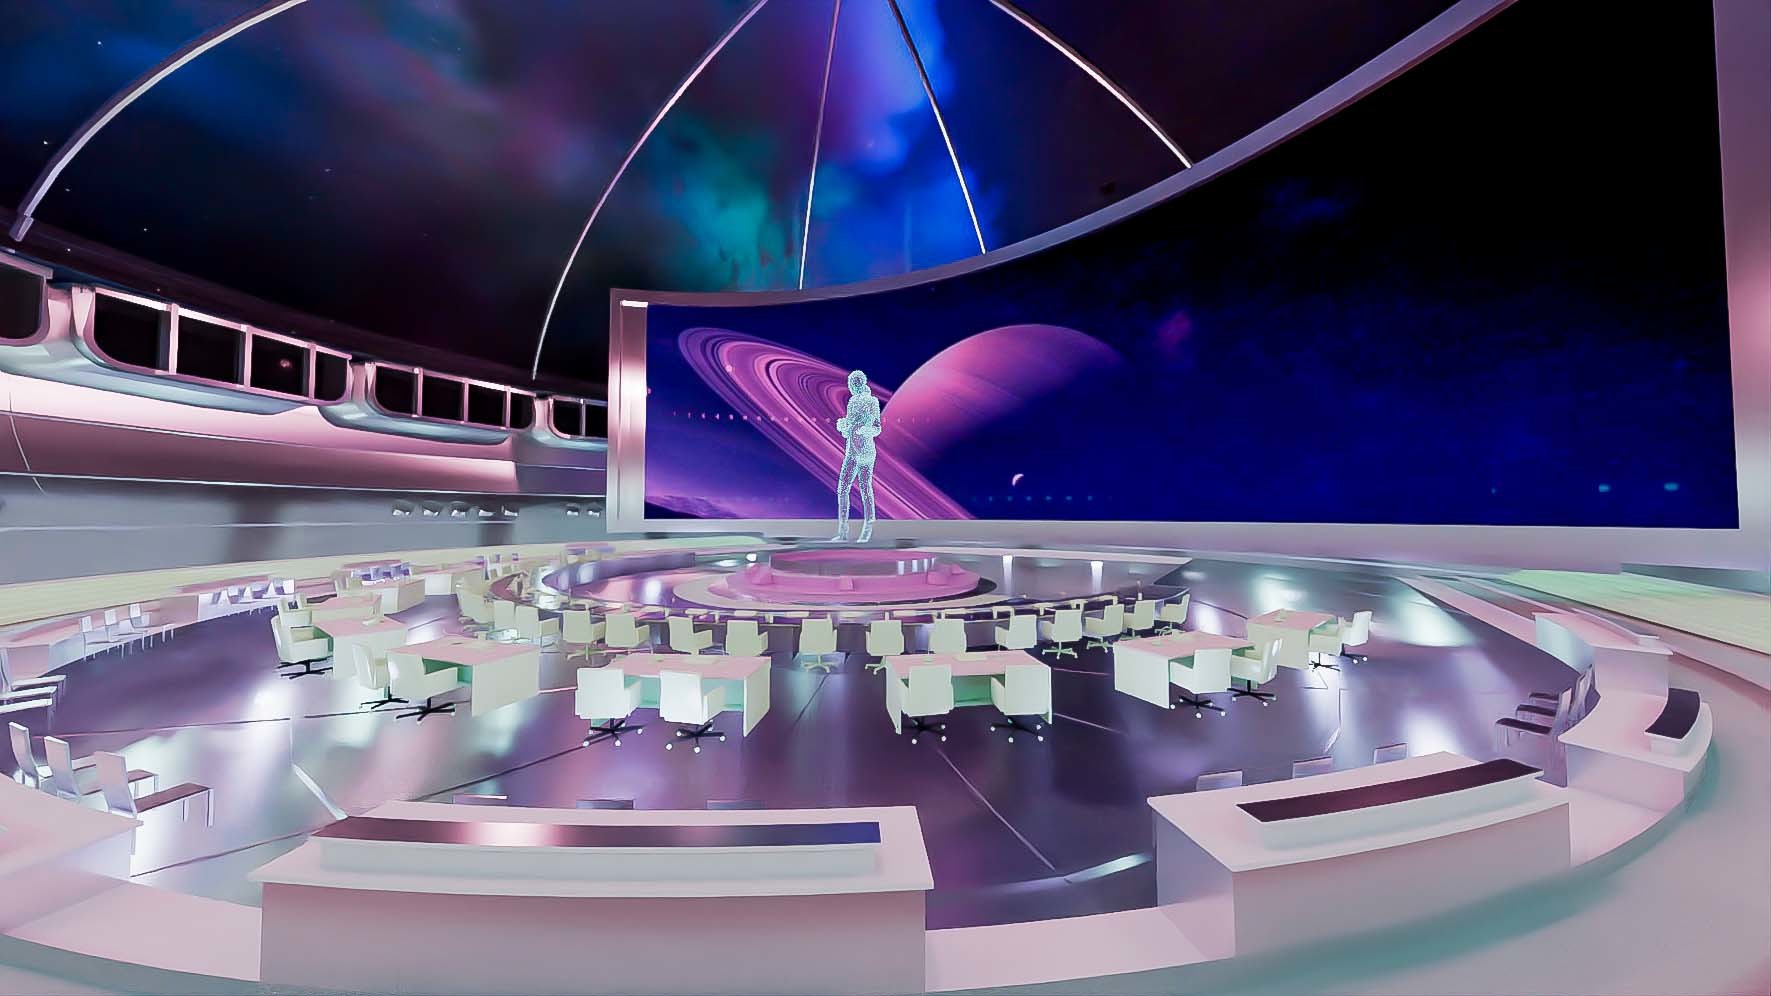 这张图片展示了一个未来风格的室内空间，有椭圆形的桌椅排列，中央是全息图像，背景似乎是太空主题，整体色彩斑斓，科技感十足。